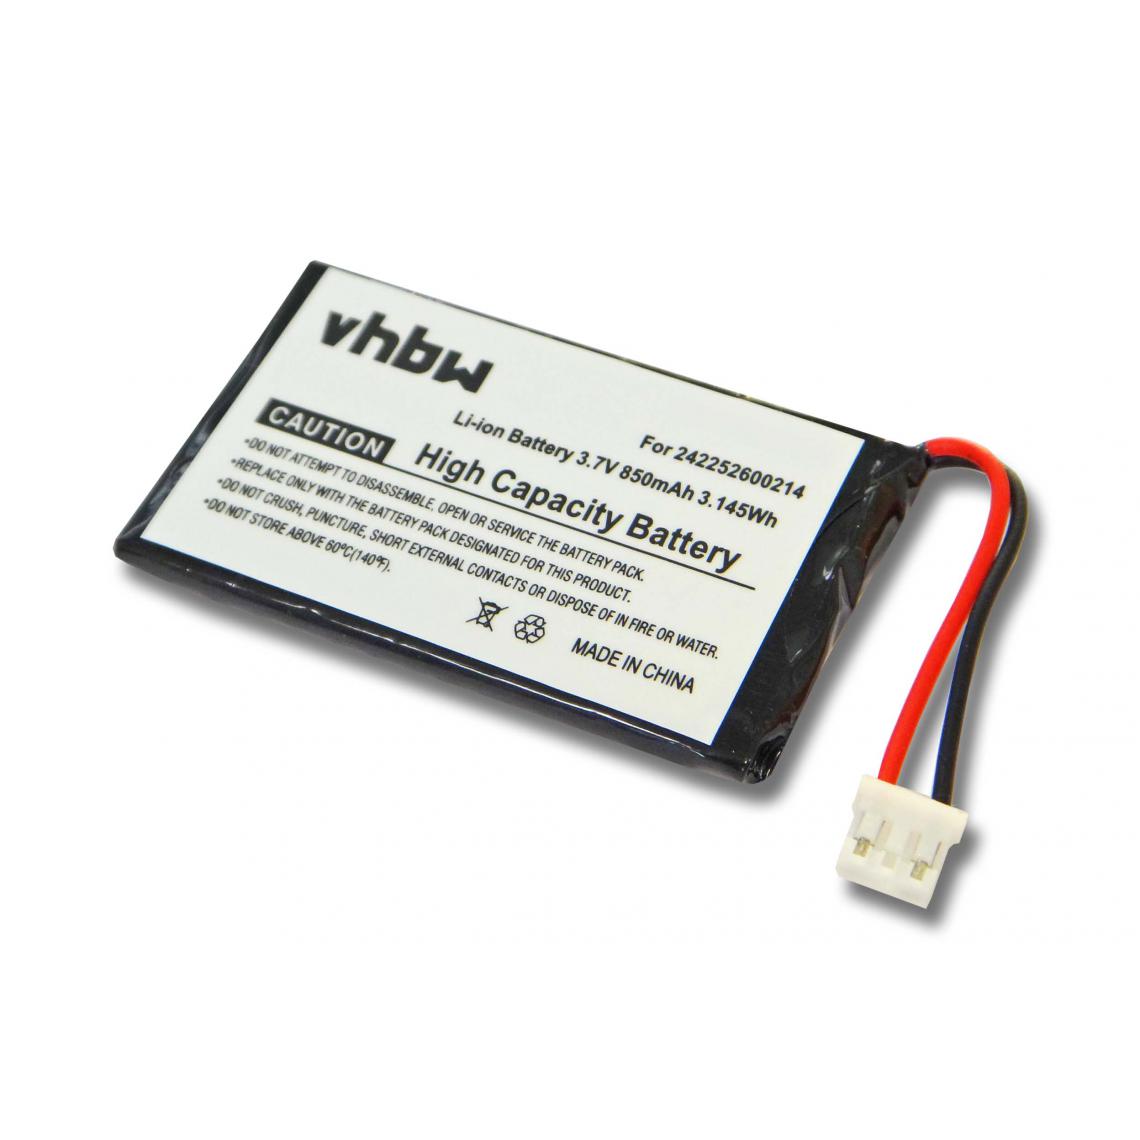 Vhbw - Batterie LI-PO 850mAh compatible pour PHILIPS Prestigo SRT9320 SRT 9320 remplace 242252600214 - Autre appareil de mesure